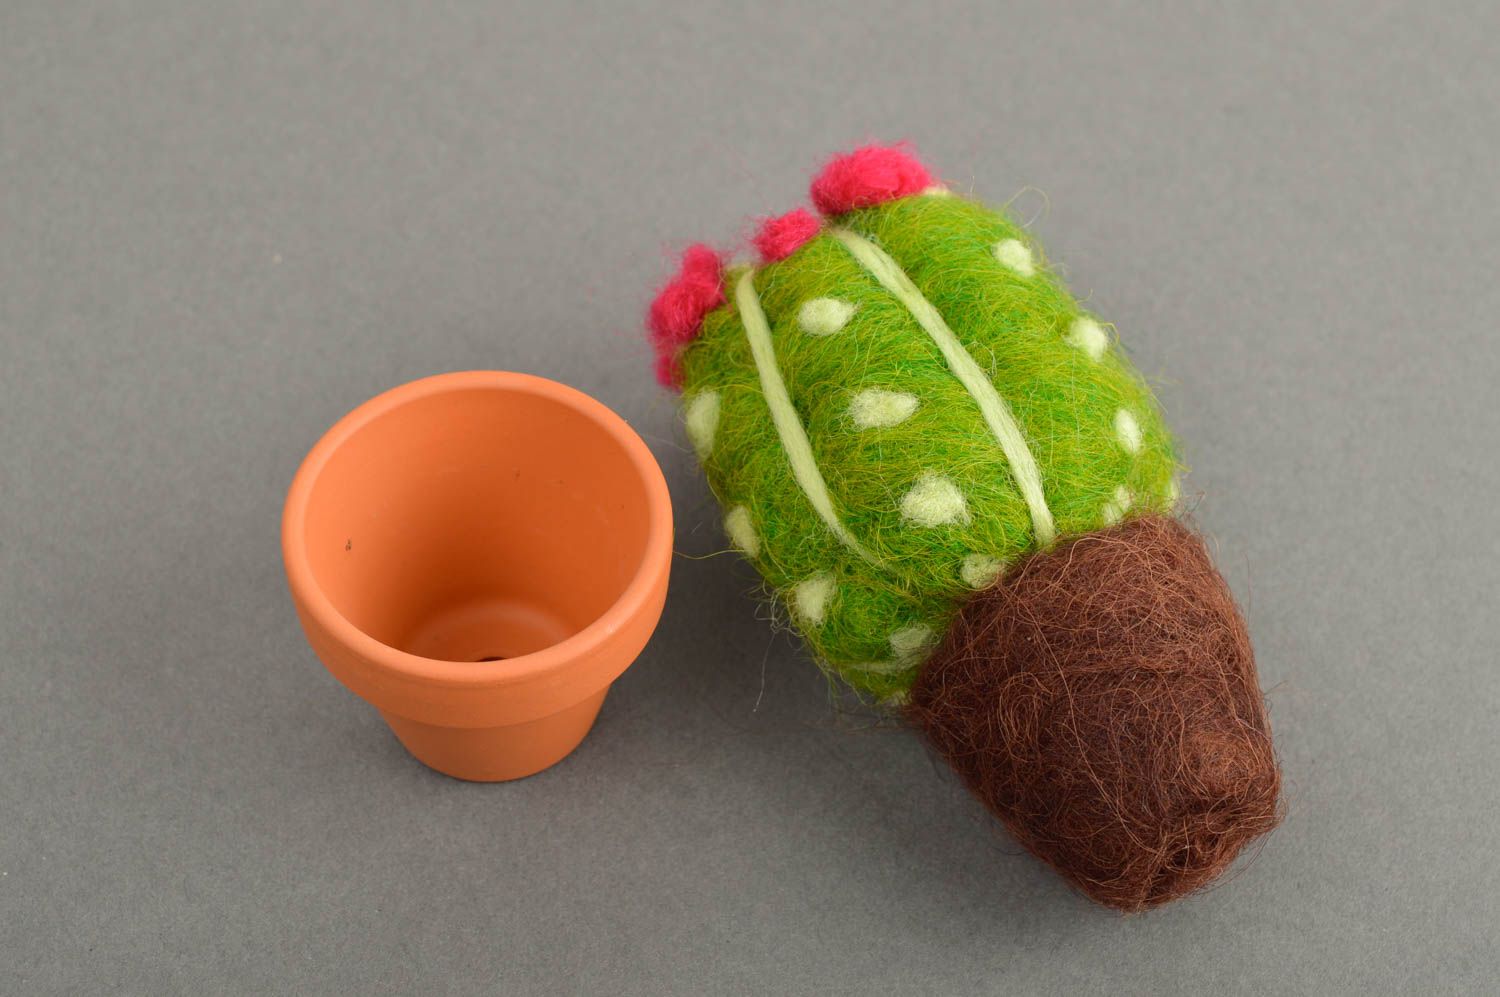 Игрушка ручной работы кактус мягкая игрушка из шерсти интерьерная игрушка фото 5